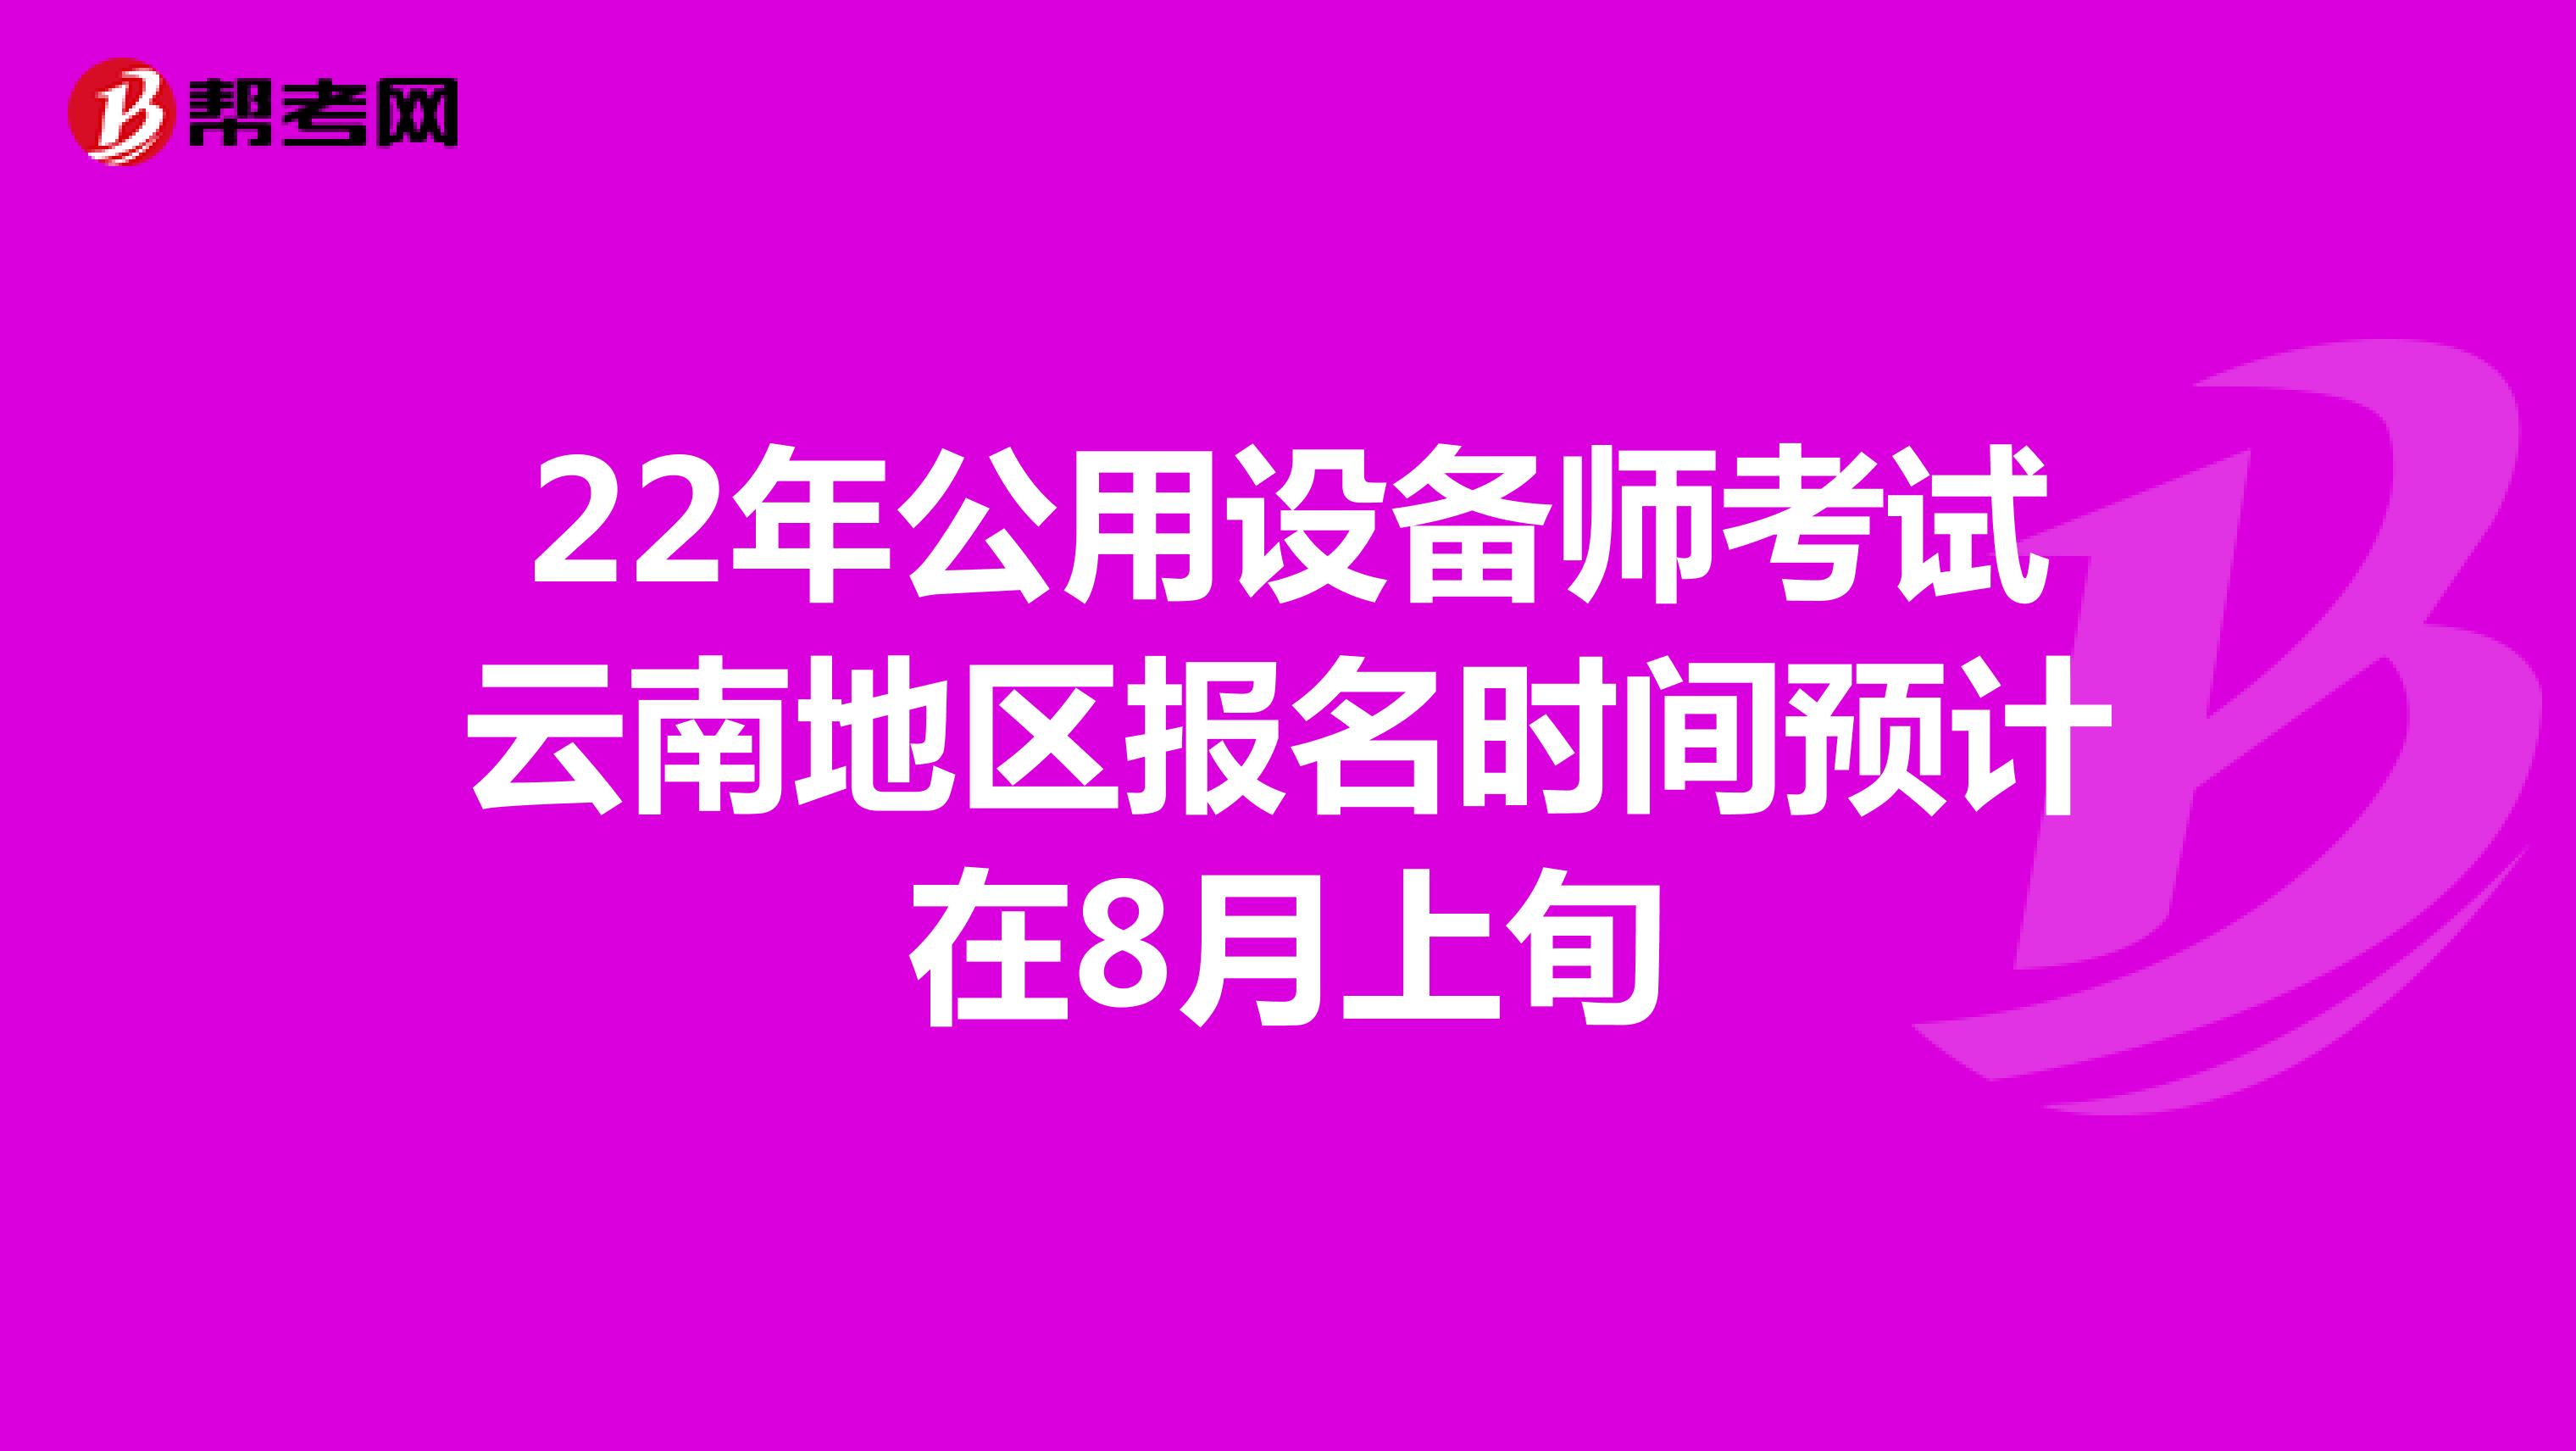 22年公用设备师考试云南地区报名时间预计在8月上旬